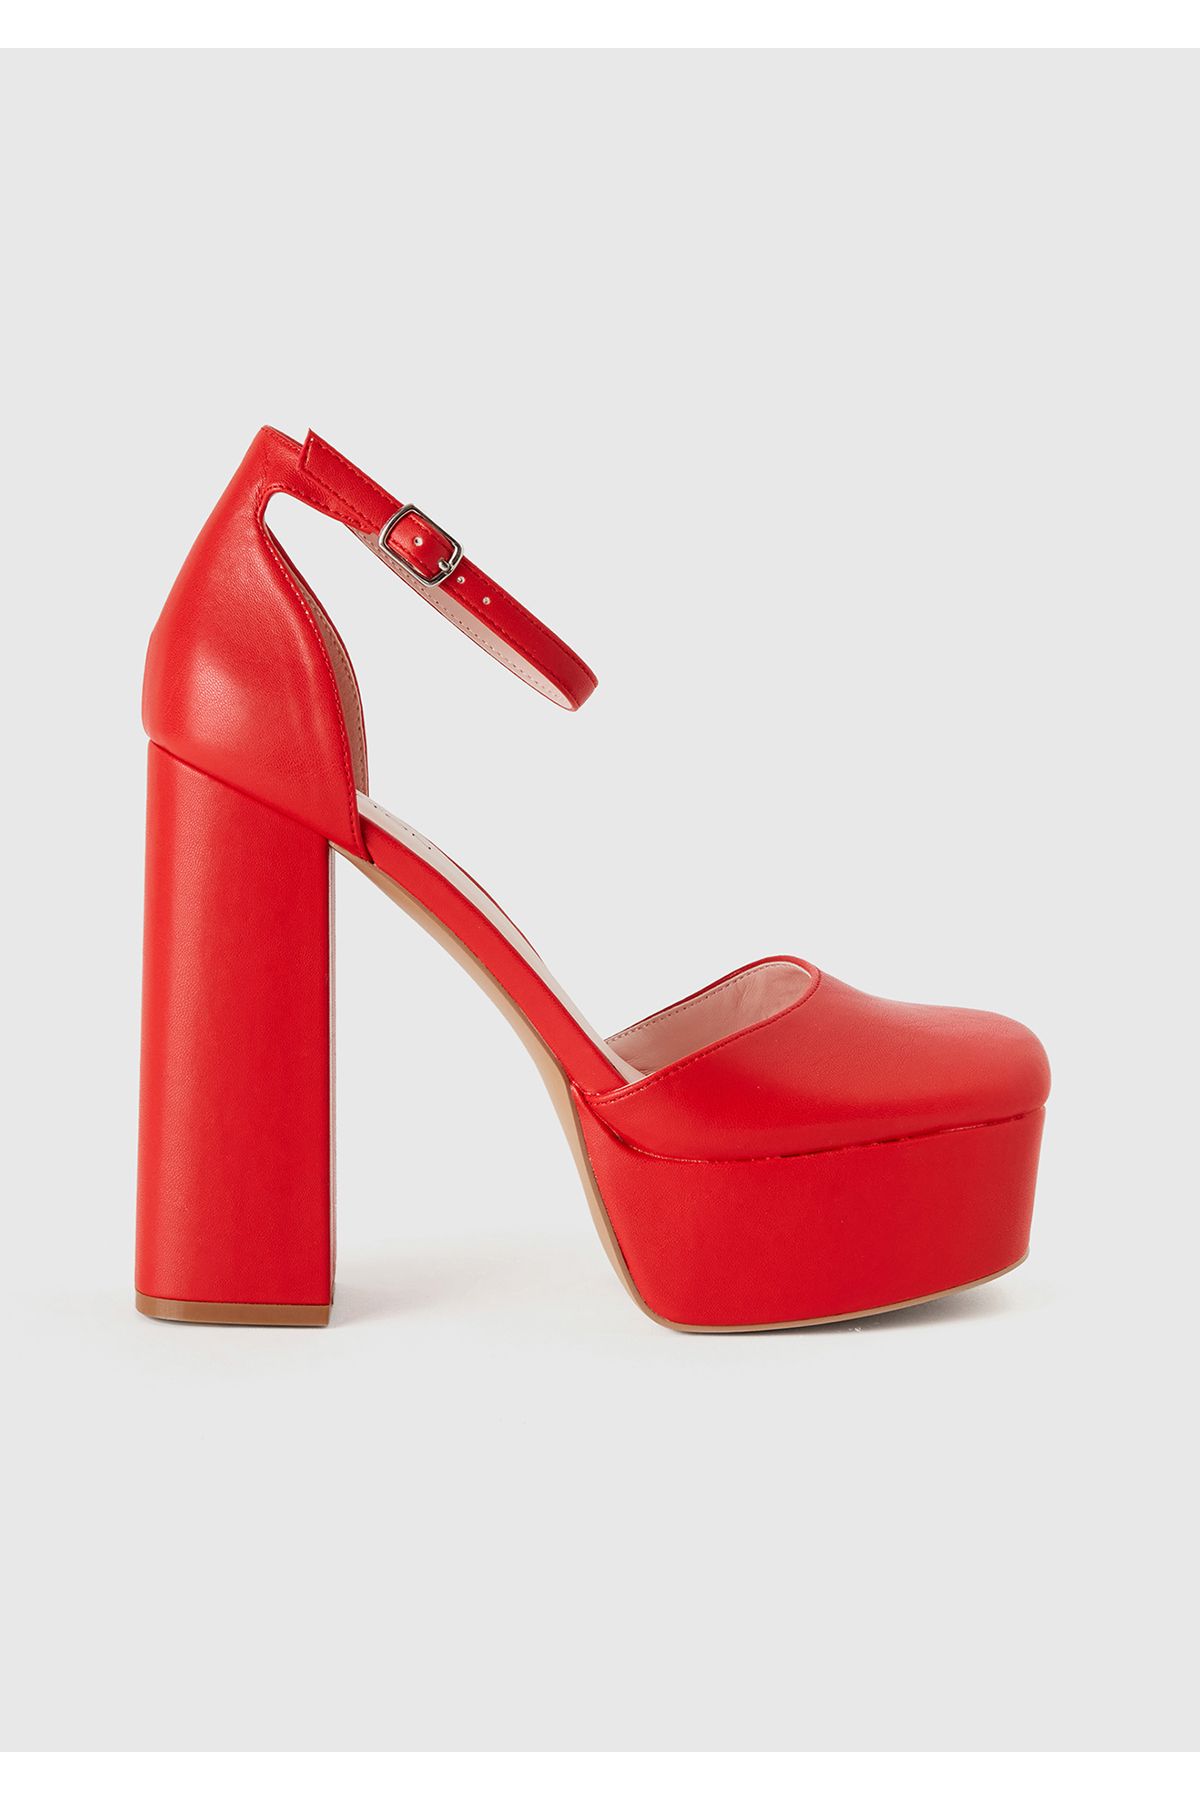 United Colors of Benetton Kadın Kırmızı Platform Topuk Ayakkabı